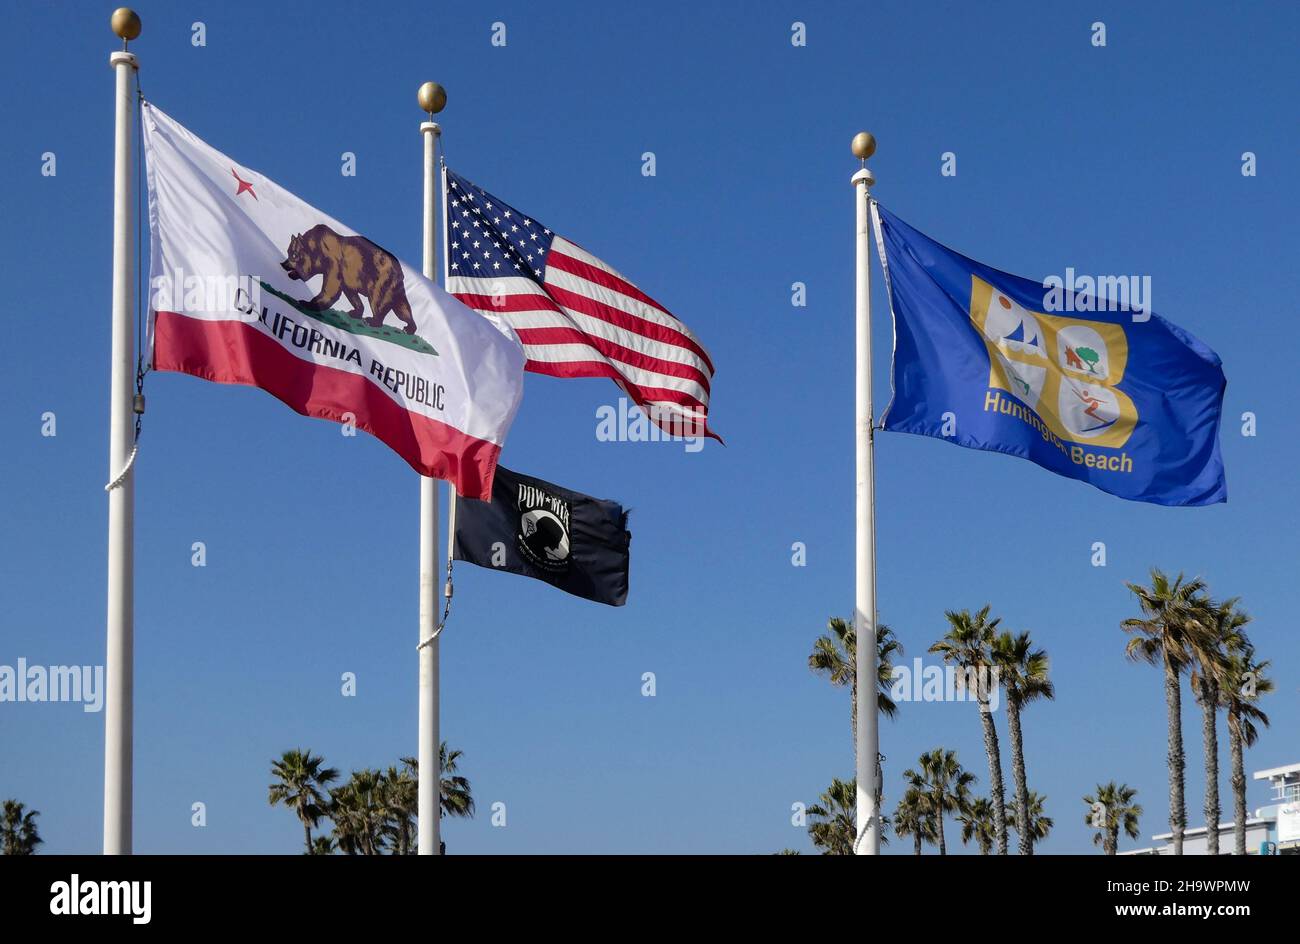 Four flags on flag poles flying in Huntington Beach, California Stock Photo